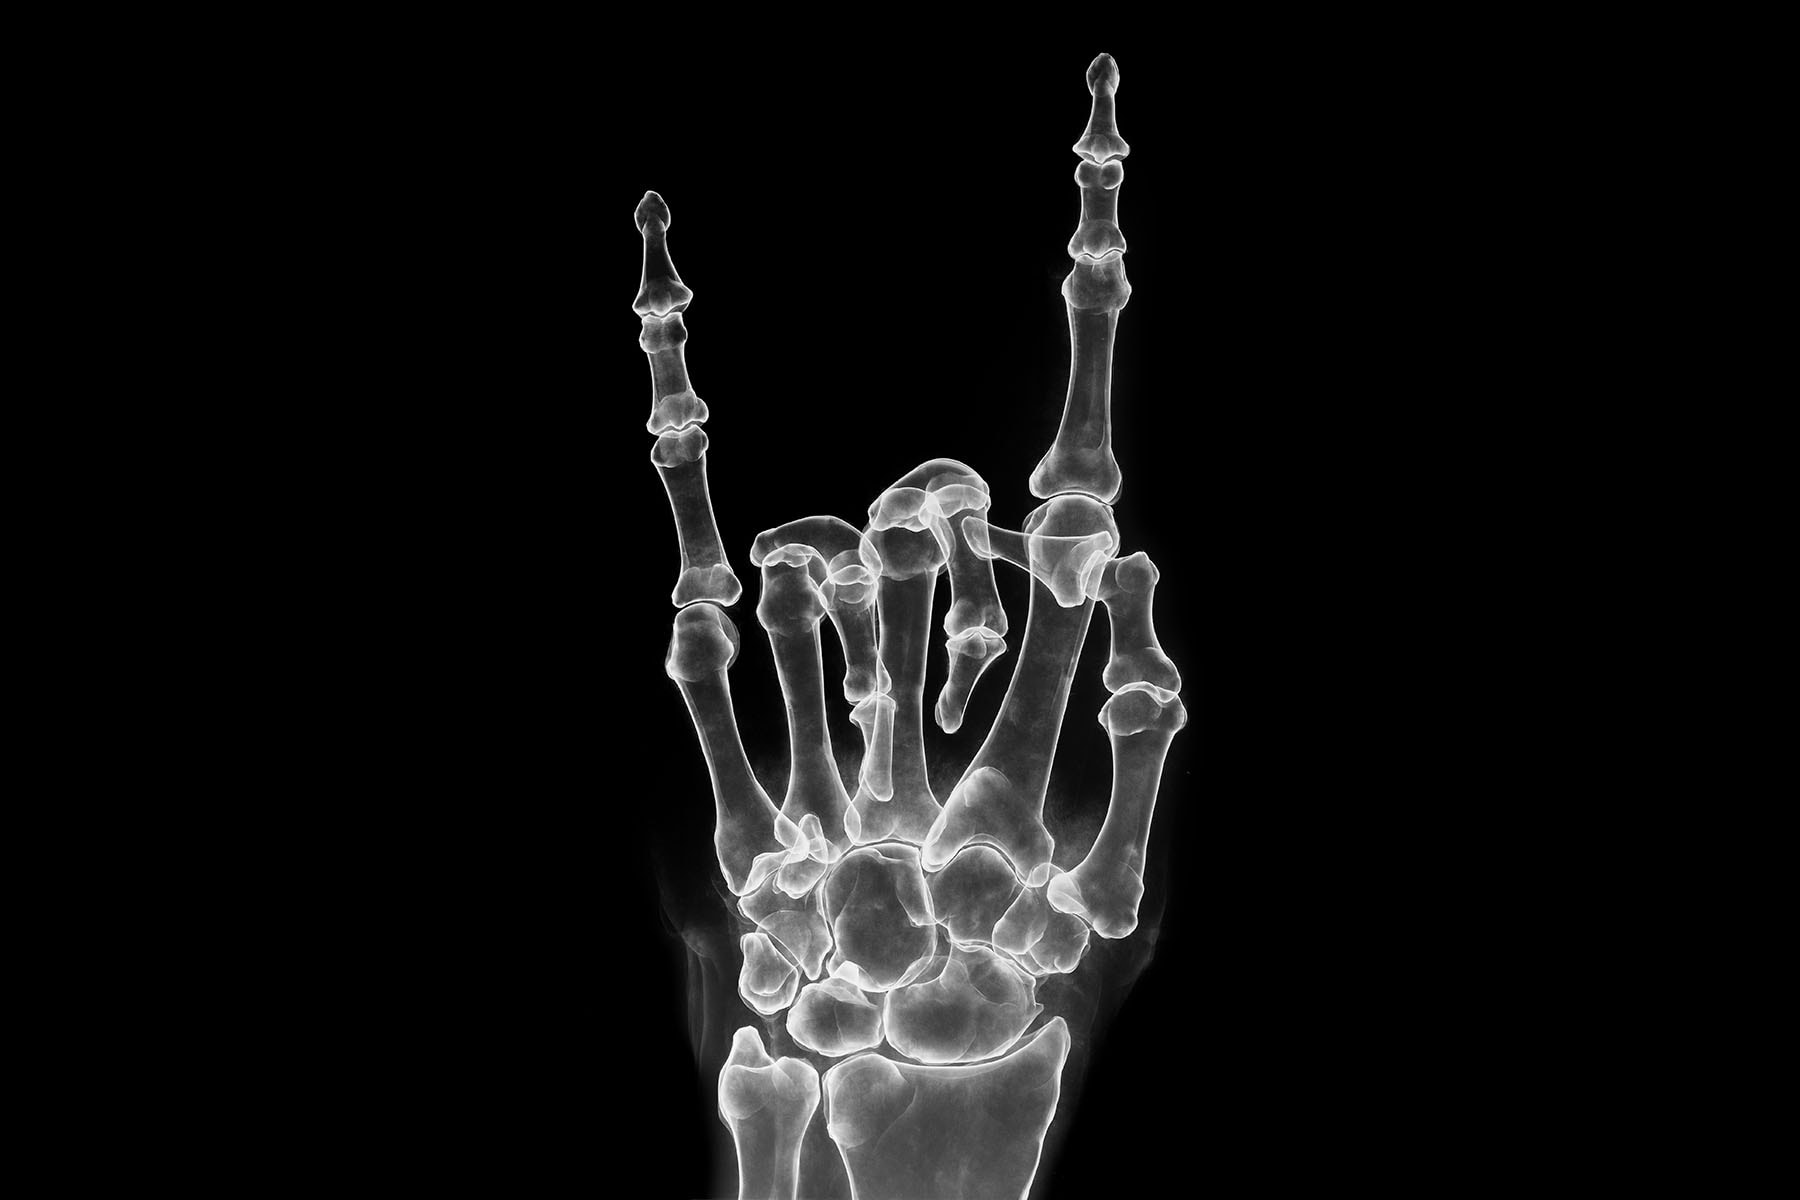 超逼真的 X 光塗鴉－藝術家 SHOK-1 與 BALLY 合作推出聯乘系列